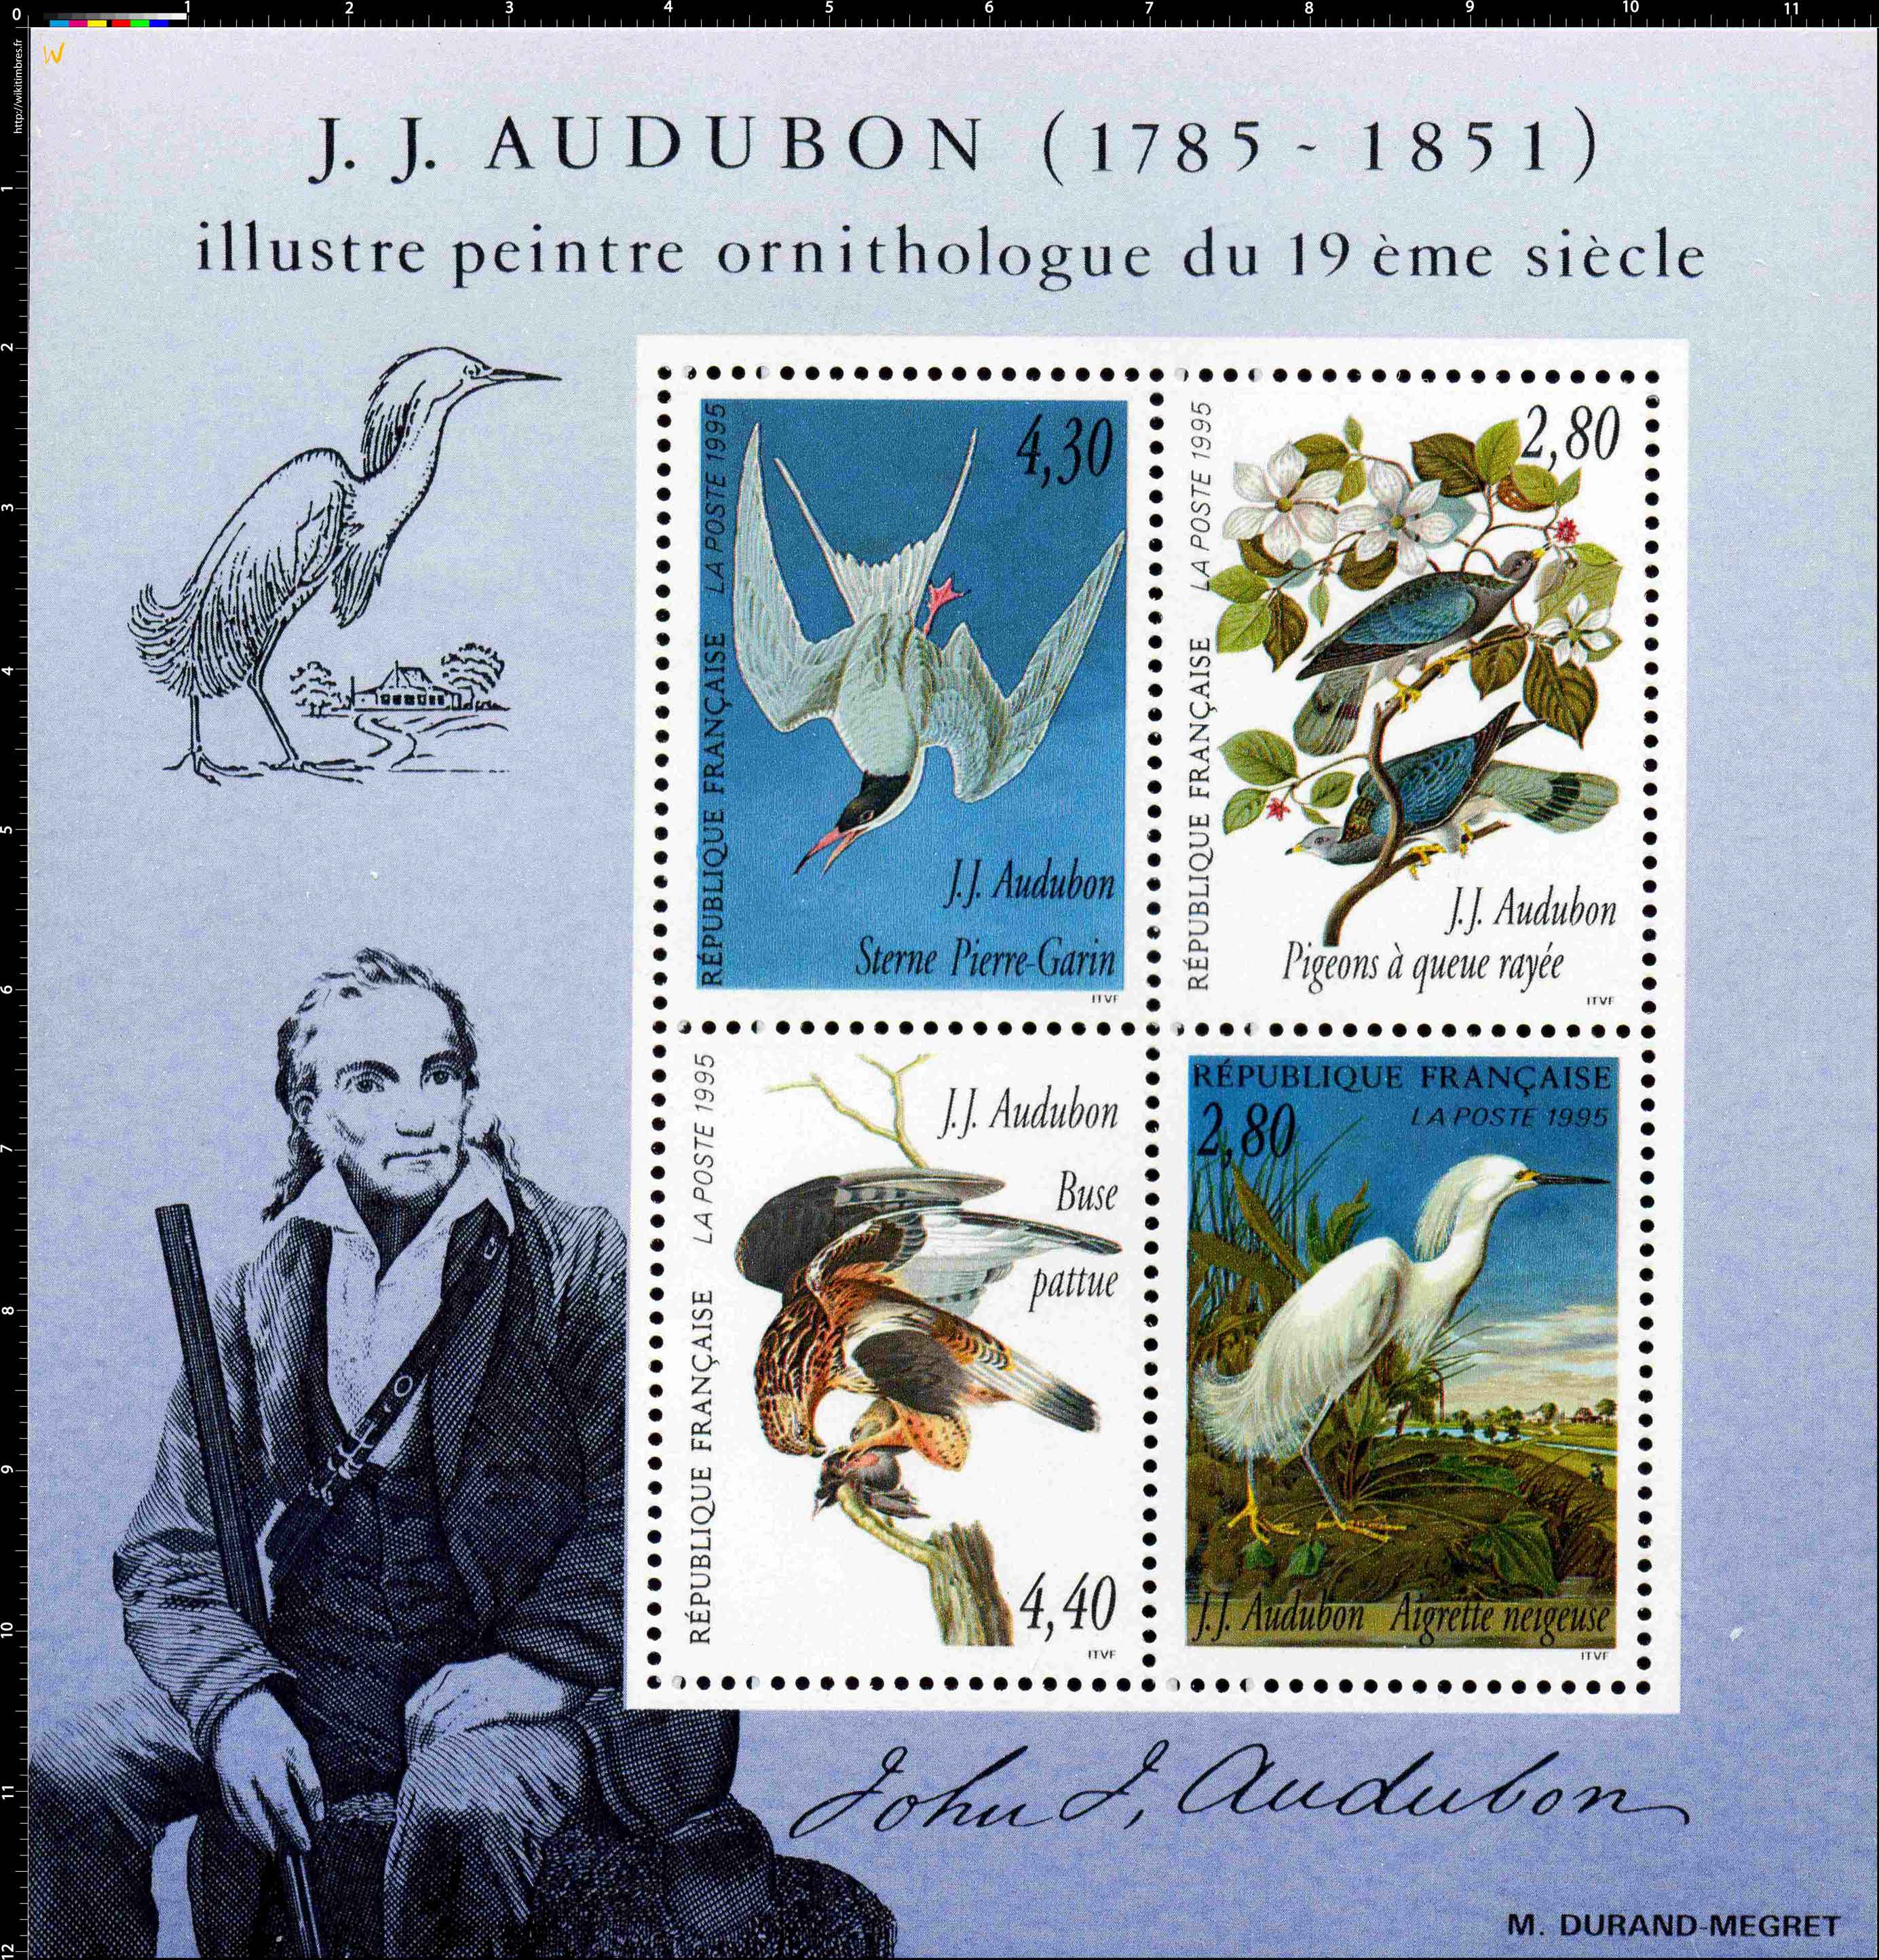 J.J. AUDUBON 1785-1851